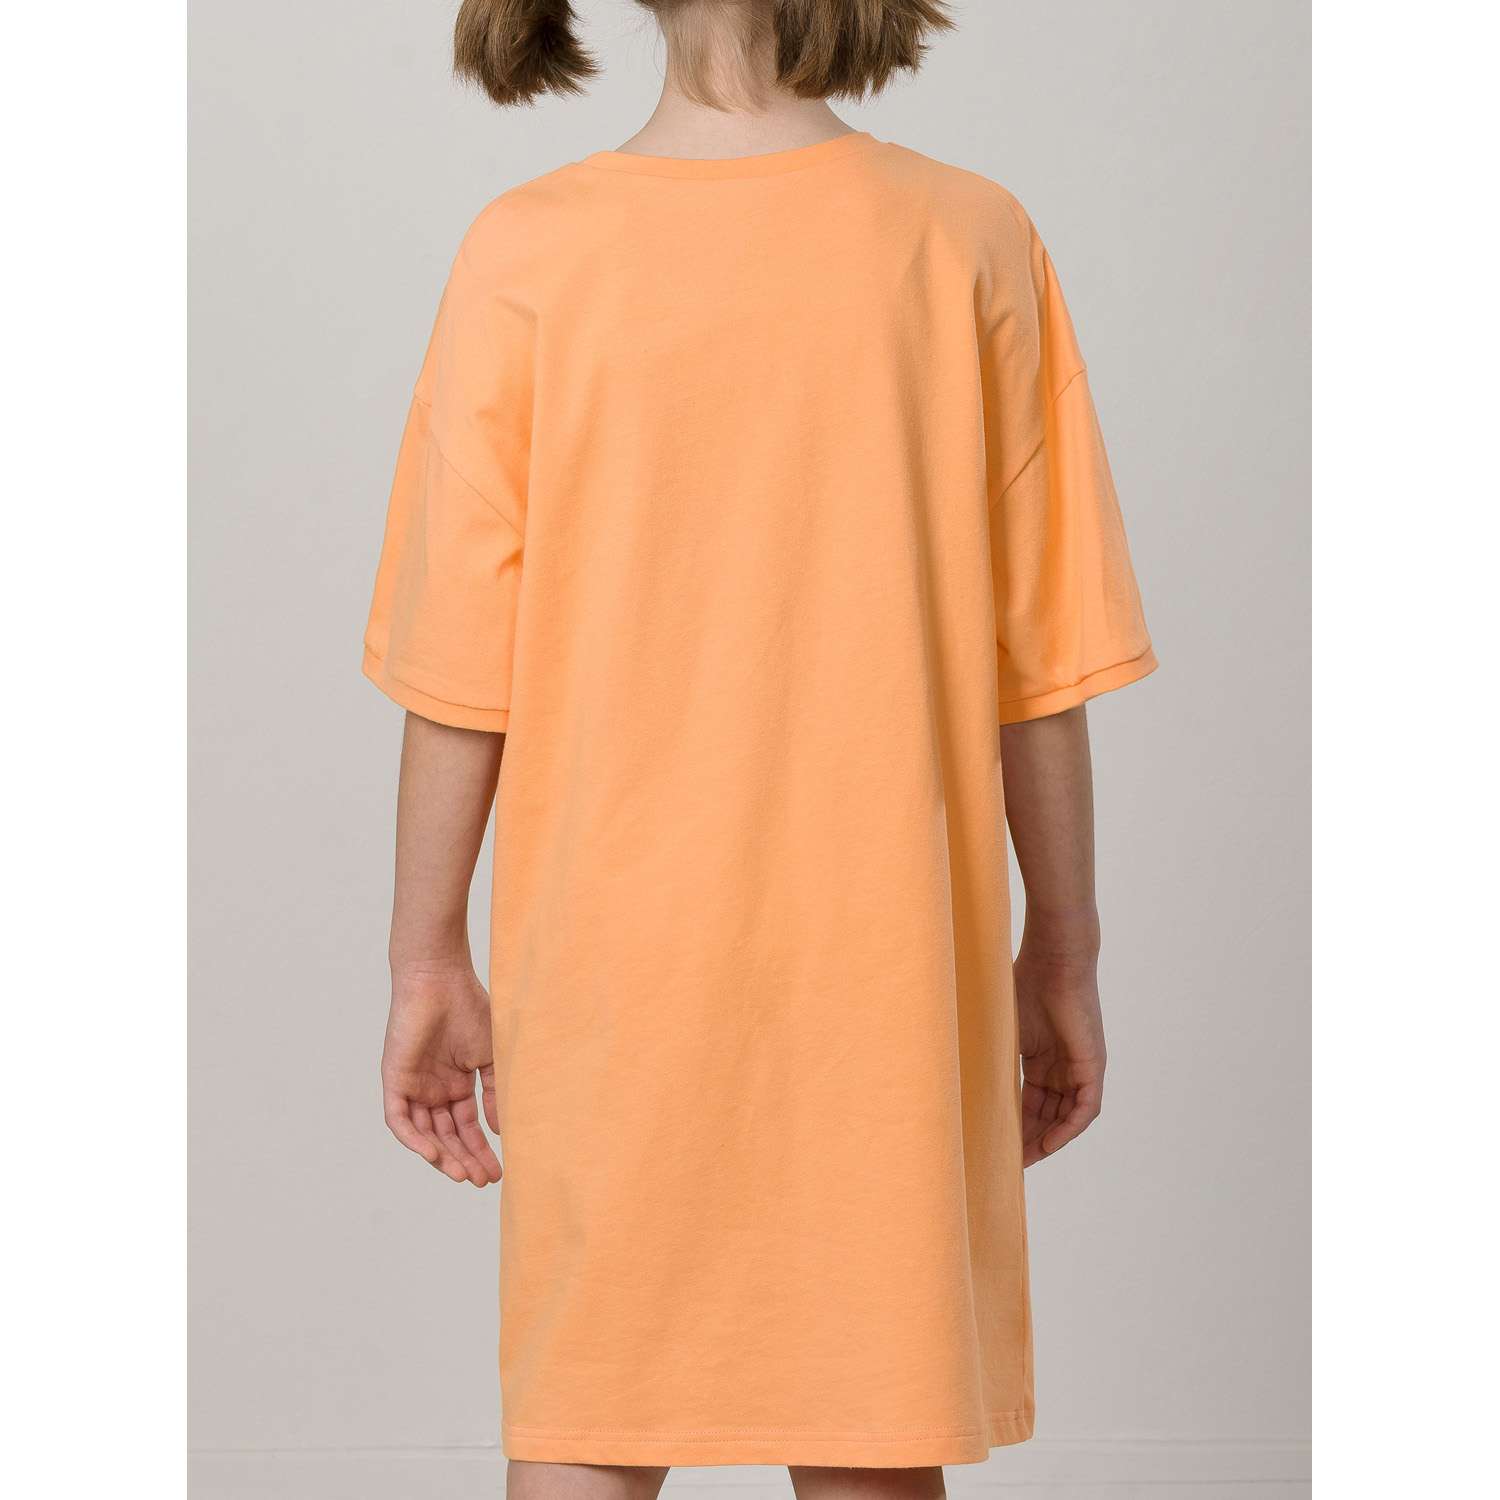 Сорочка ночная PELICAN WFDT4317U/Оранжевый(31) - фото 2